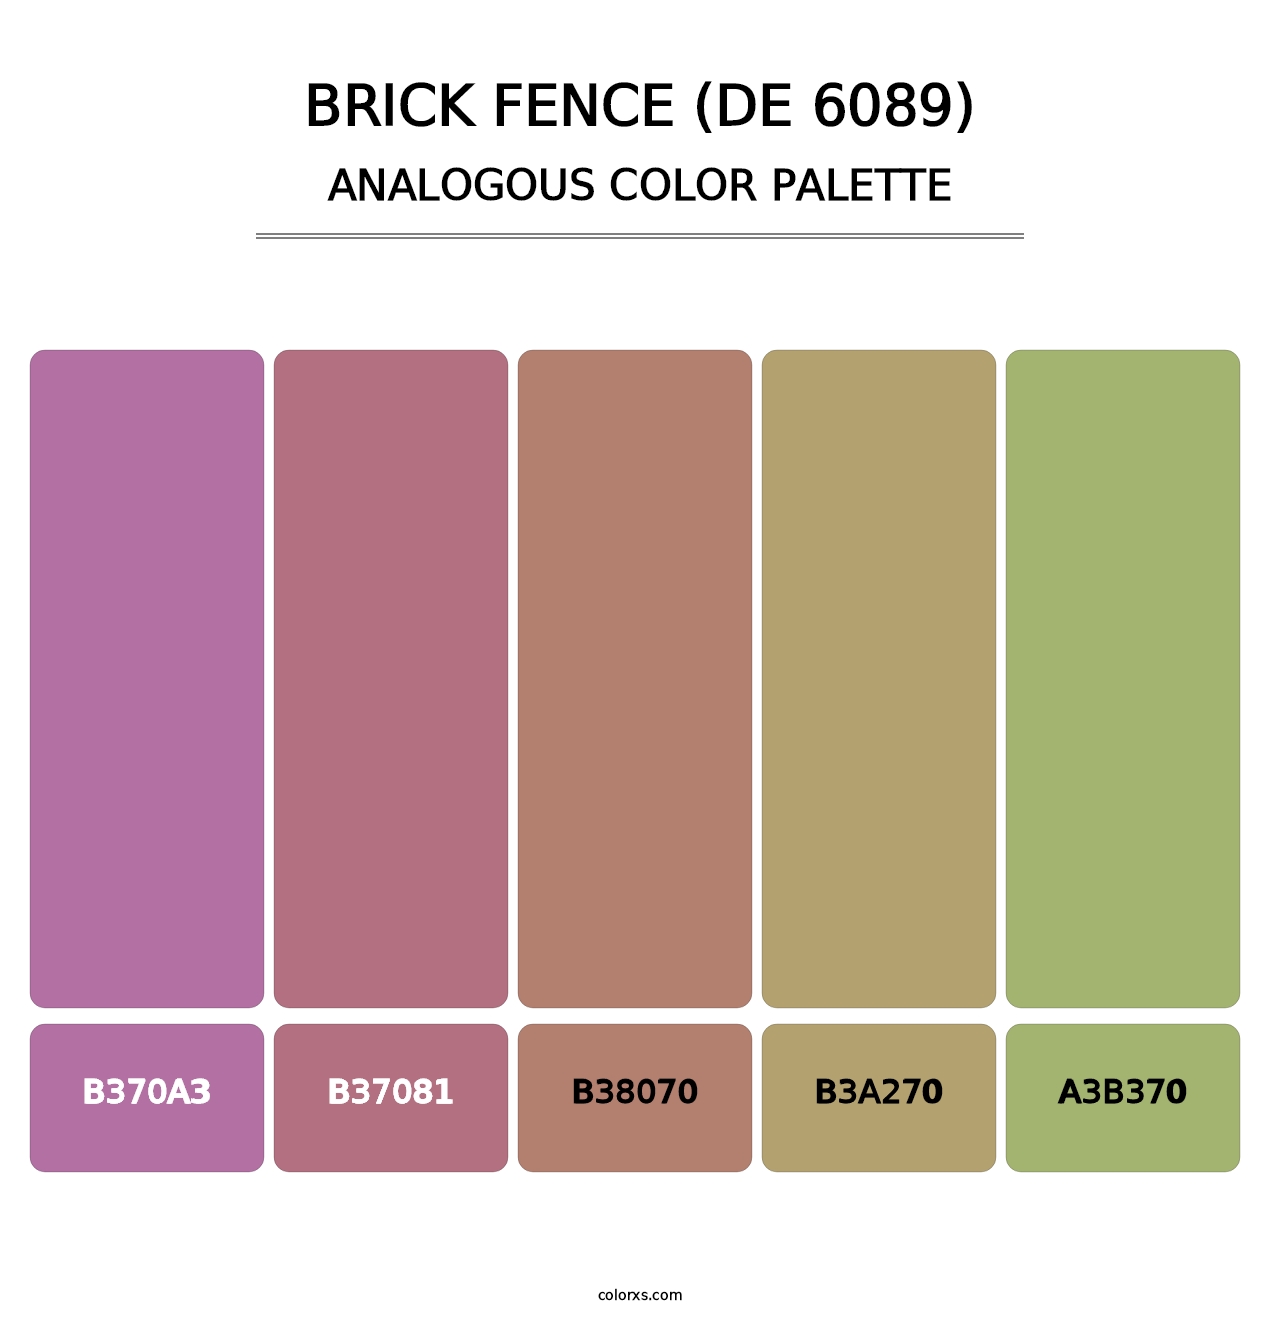 Brick Fence (DE 6089) - Analogous Color Palette